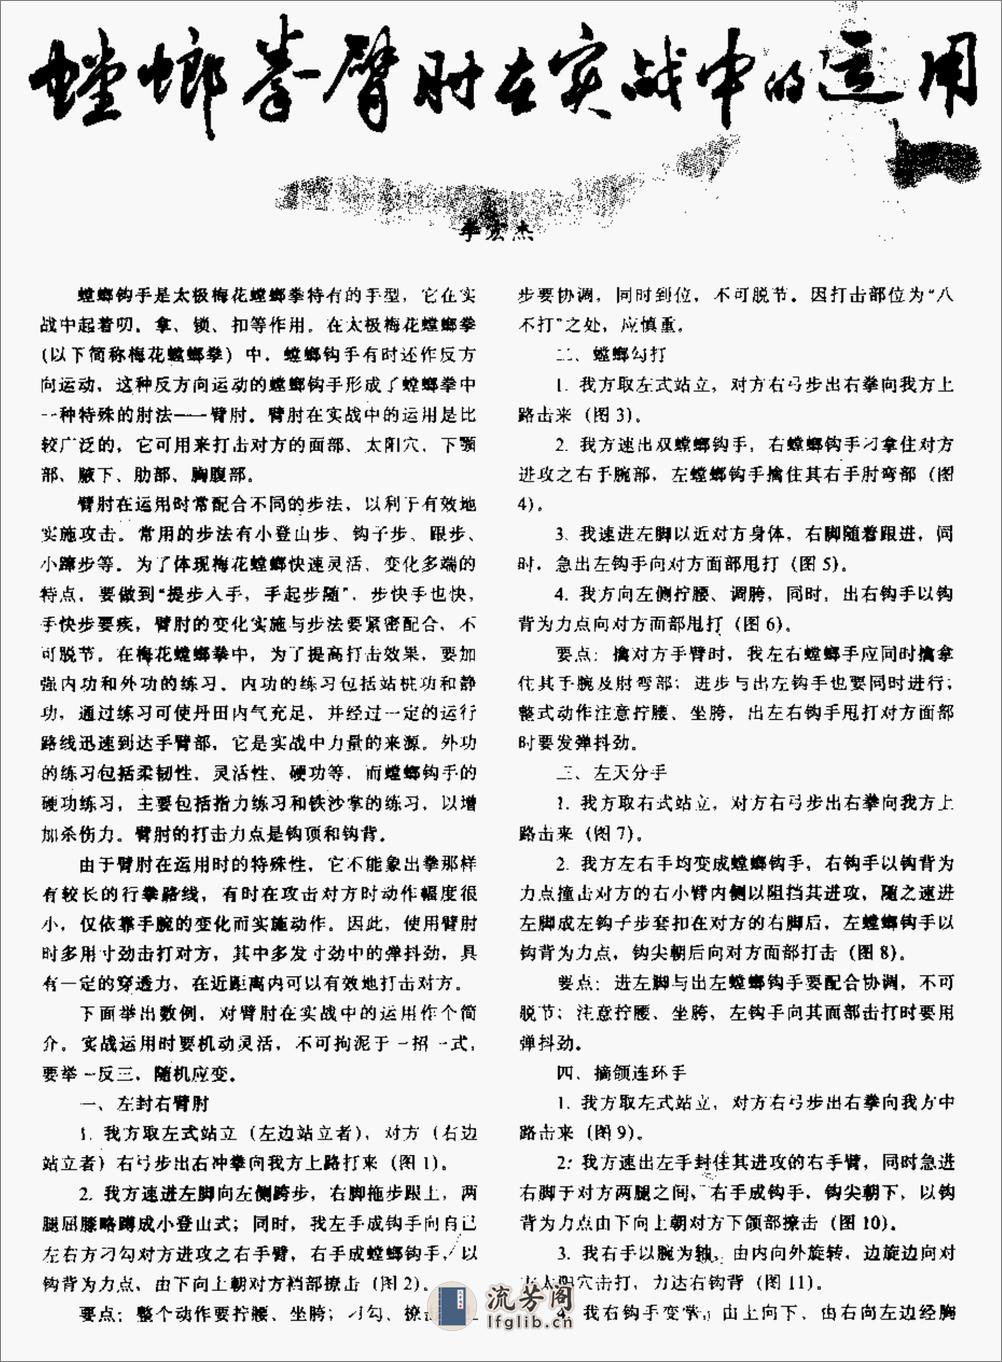 《螳螂拳臂肘在实战中的应用》李宏杰 - 第1页预览图